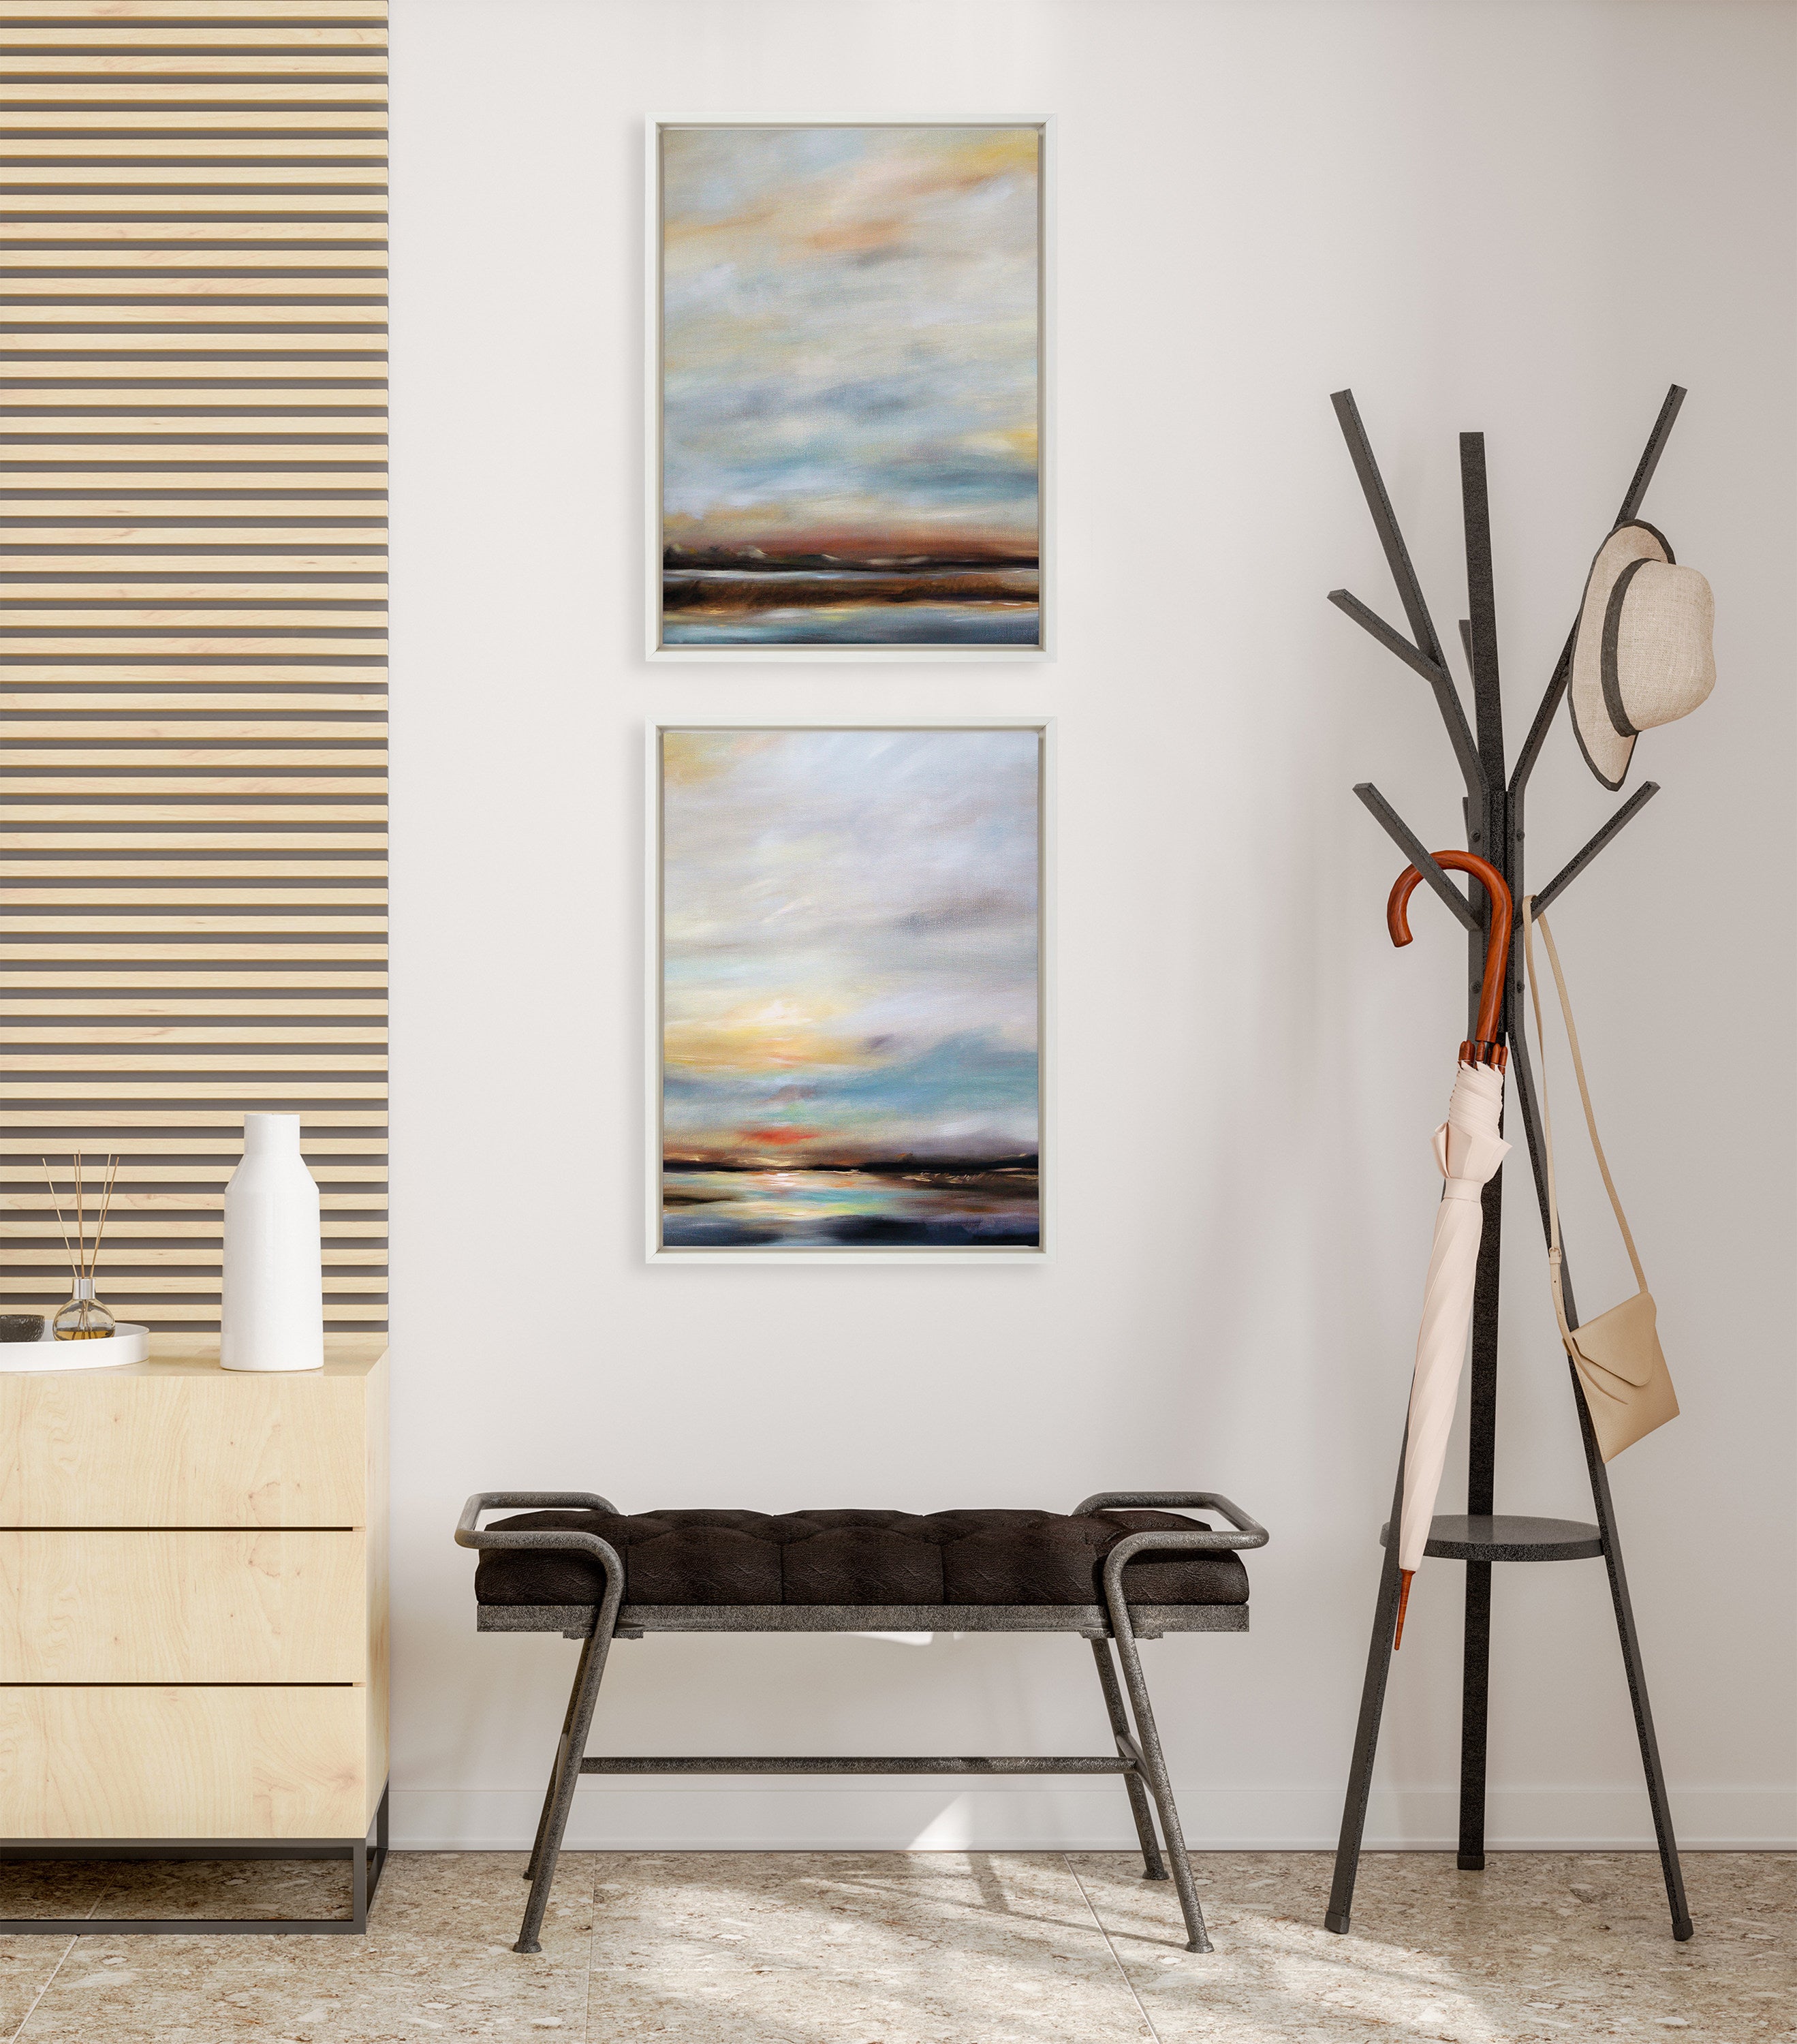 Sylvie Carolina Sunset Diptych Framed Canvas Art Set by Mary Sparrow